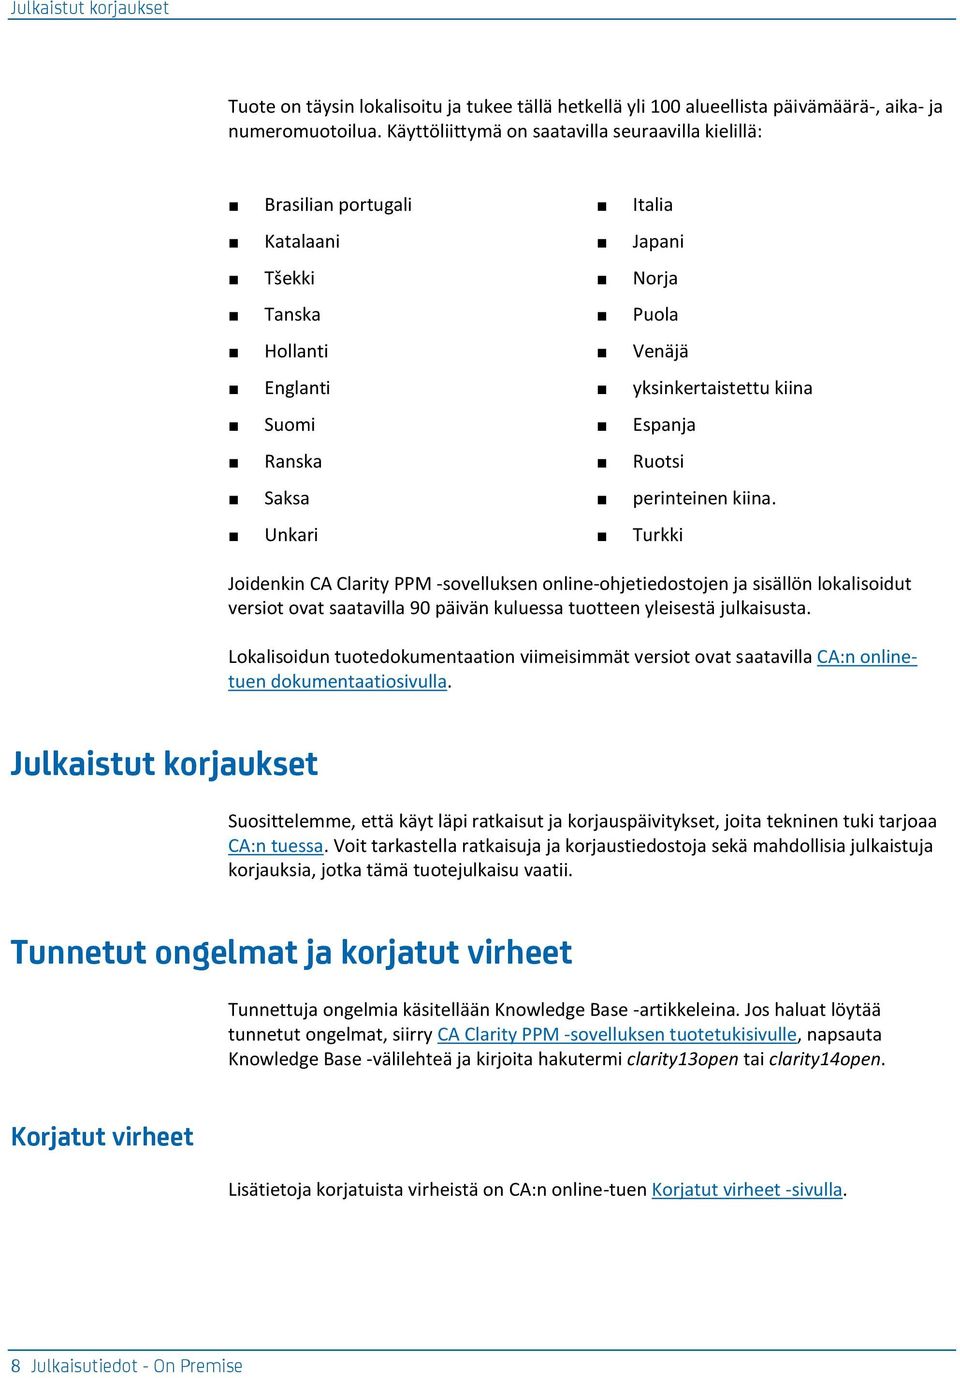 Saksa perinteinen kiina. Unkari Turkki Joidenkin CA Clarity PPM -sovelluksen online-ohjetiedostojen ja sisällön lokalisoidut versiot ovat saatavilla 90 päivän kuluessa tuotteen yleisestä julkaisusta.